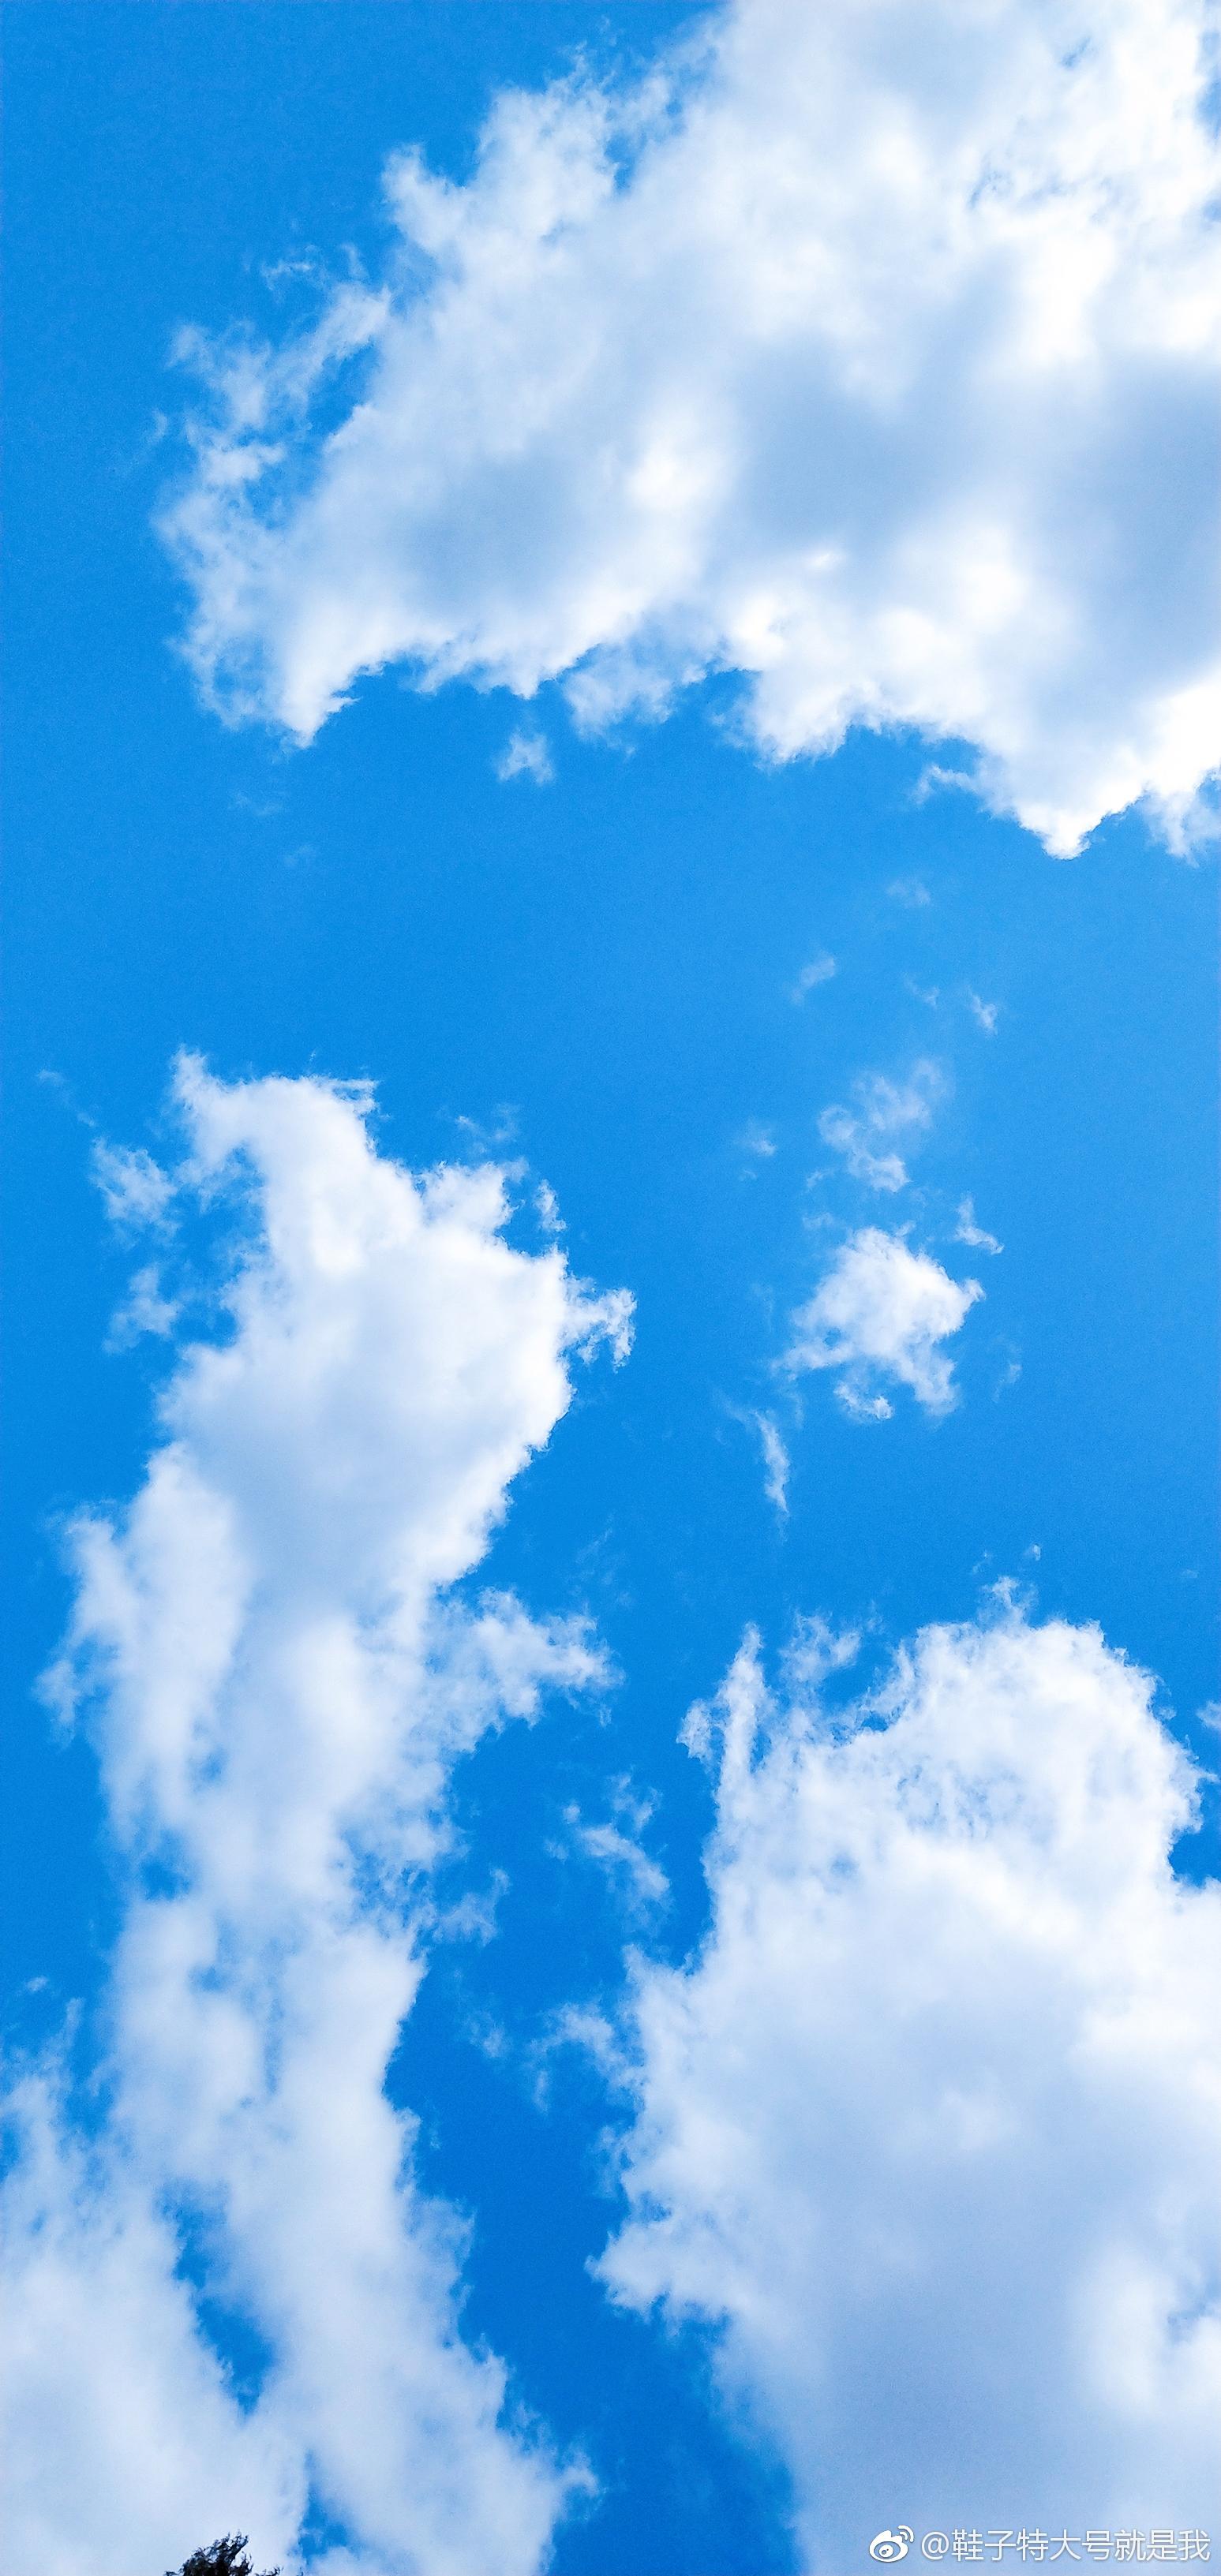 一起来欣赏家乡的蓝天白云吧